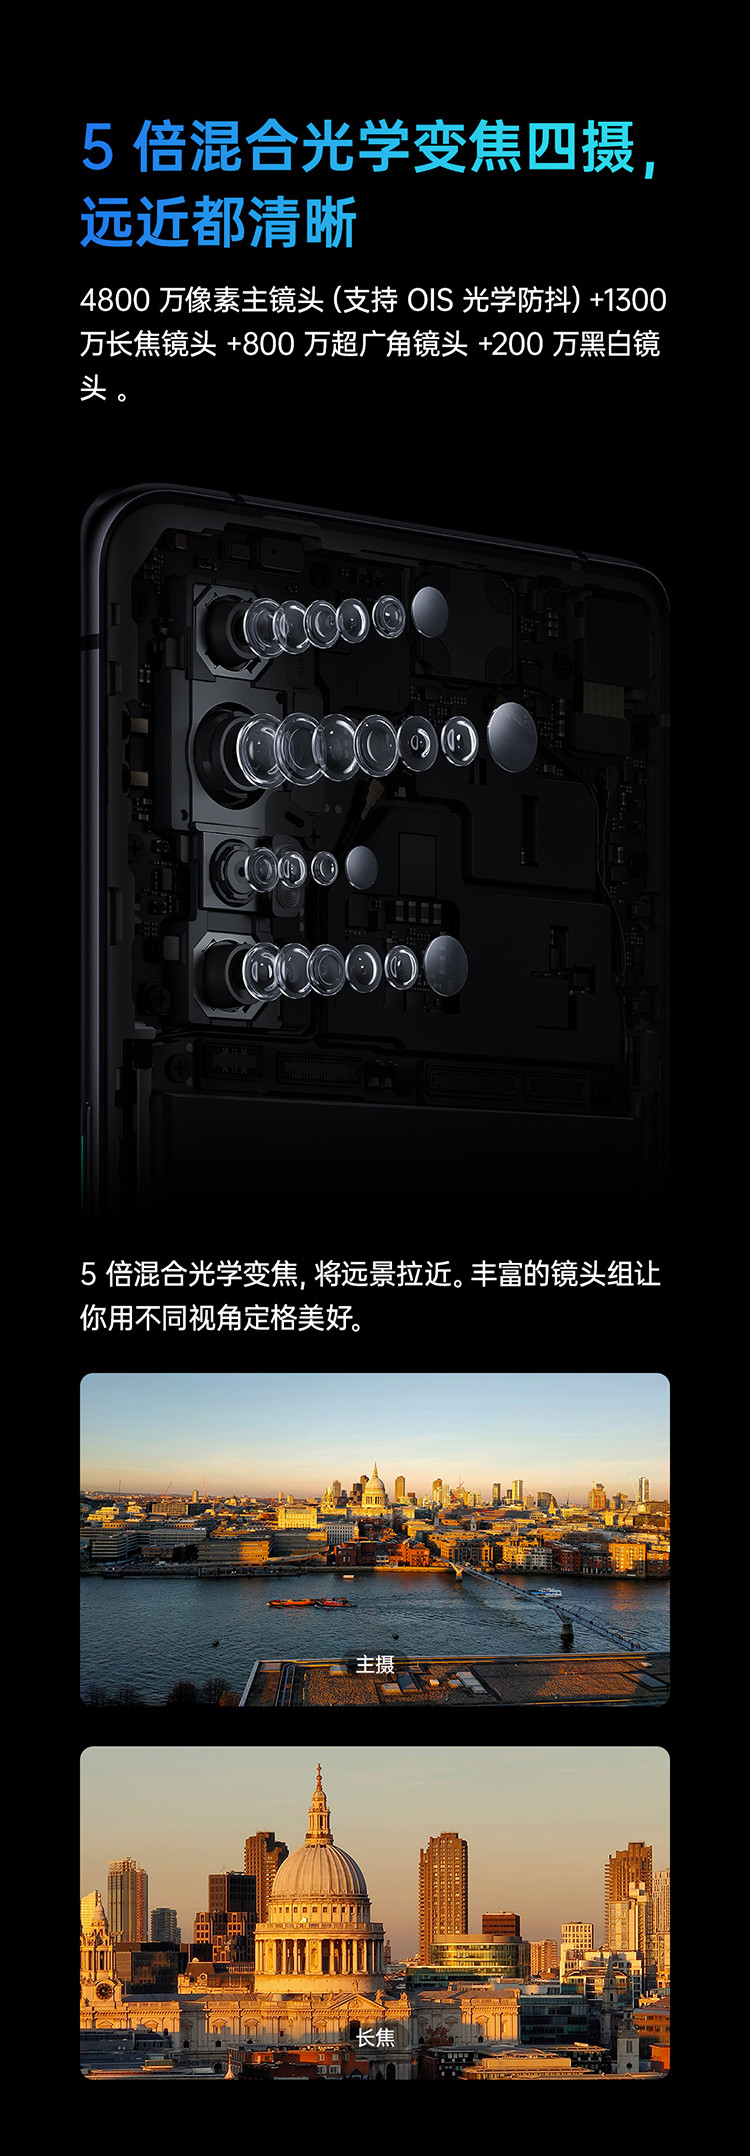 OPPO Reno3 Pro 双模5G 视频双防抖 90HZ高感曲面屏7.7mm轻薄机身8+128G